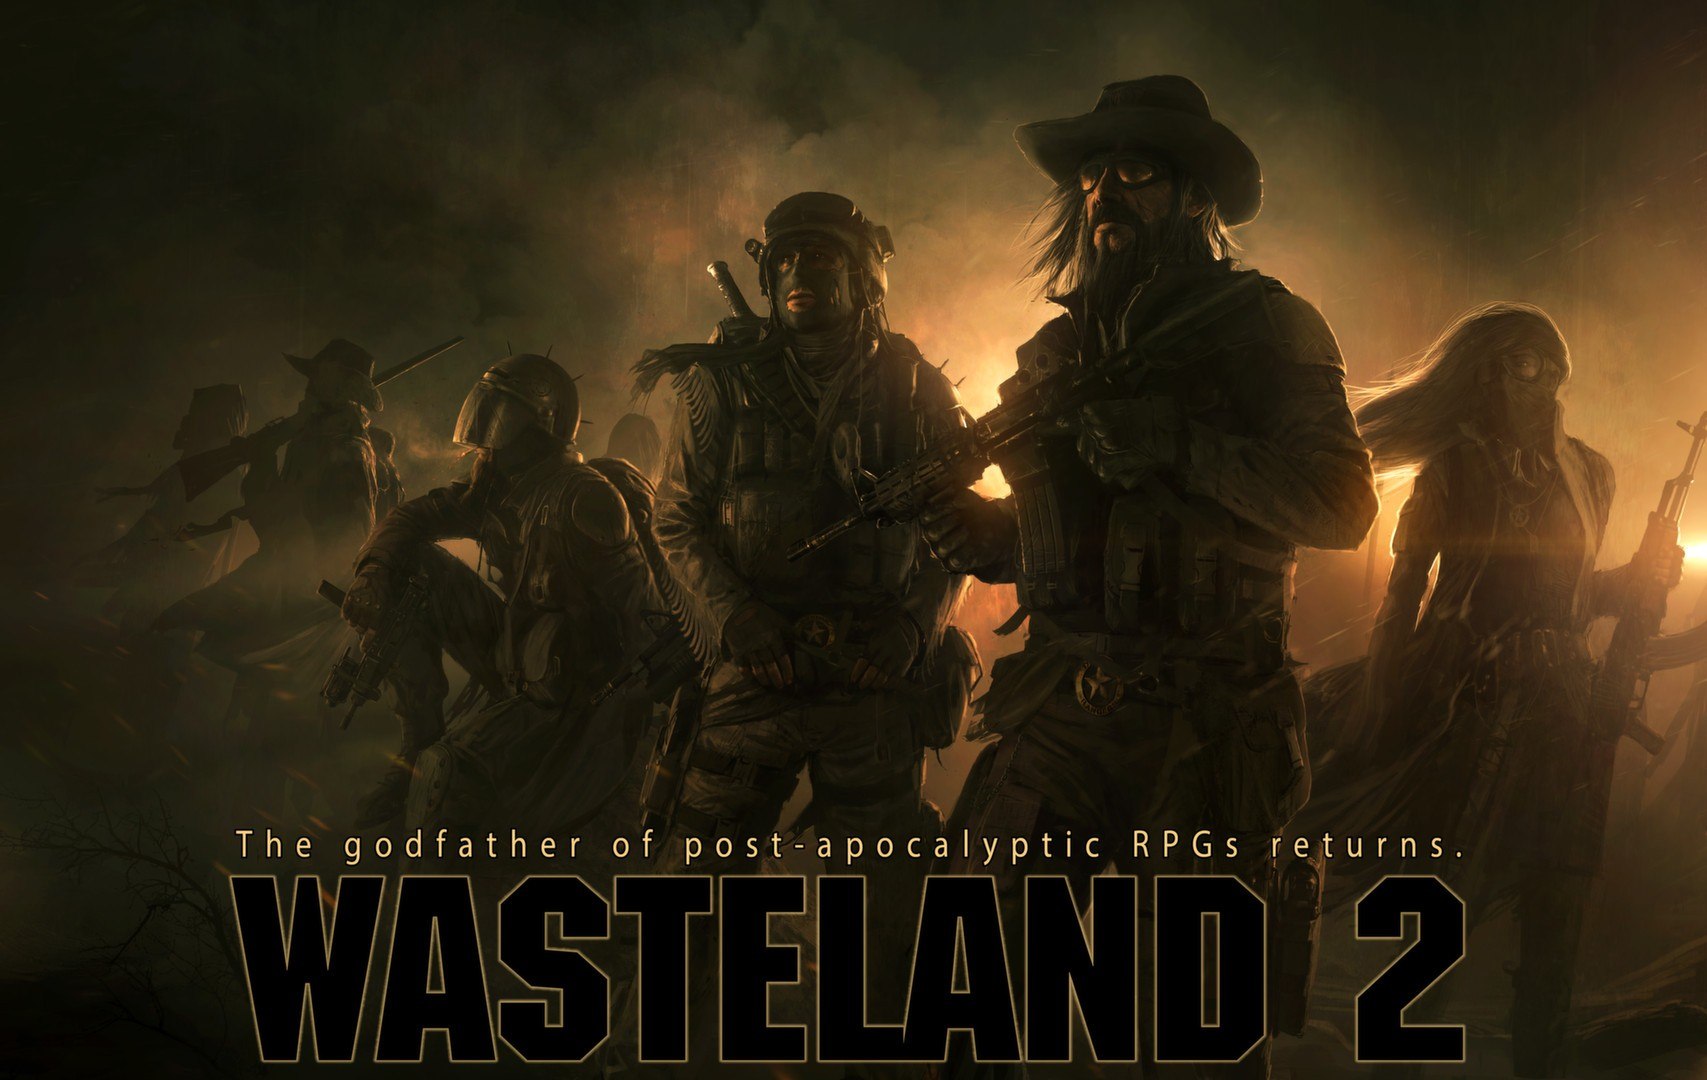 Wasteland 2: Director's Cut - Classic Edition Steam CD Key 11.19 $